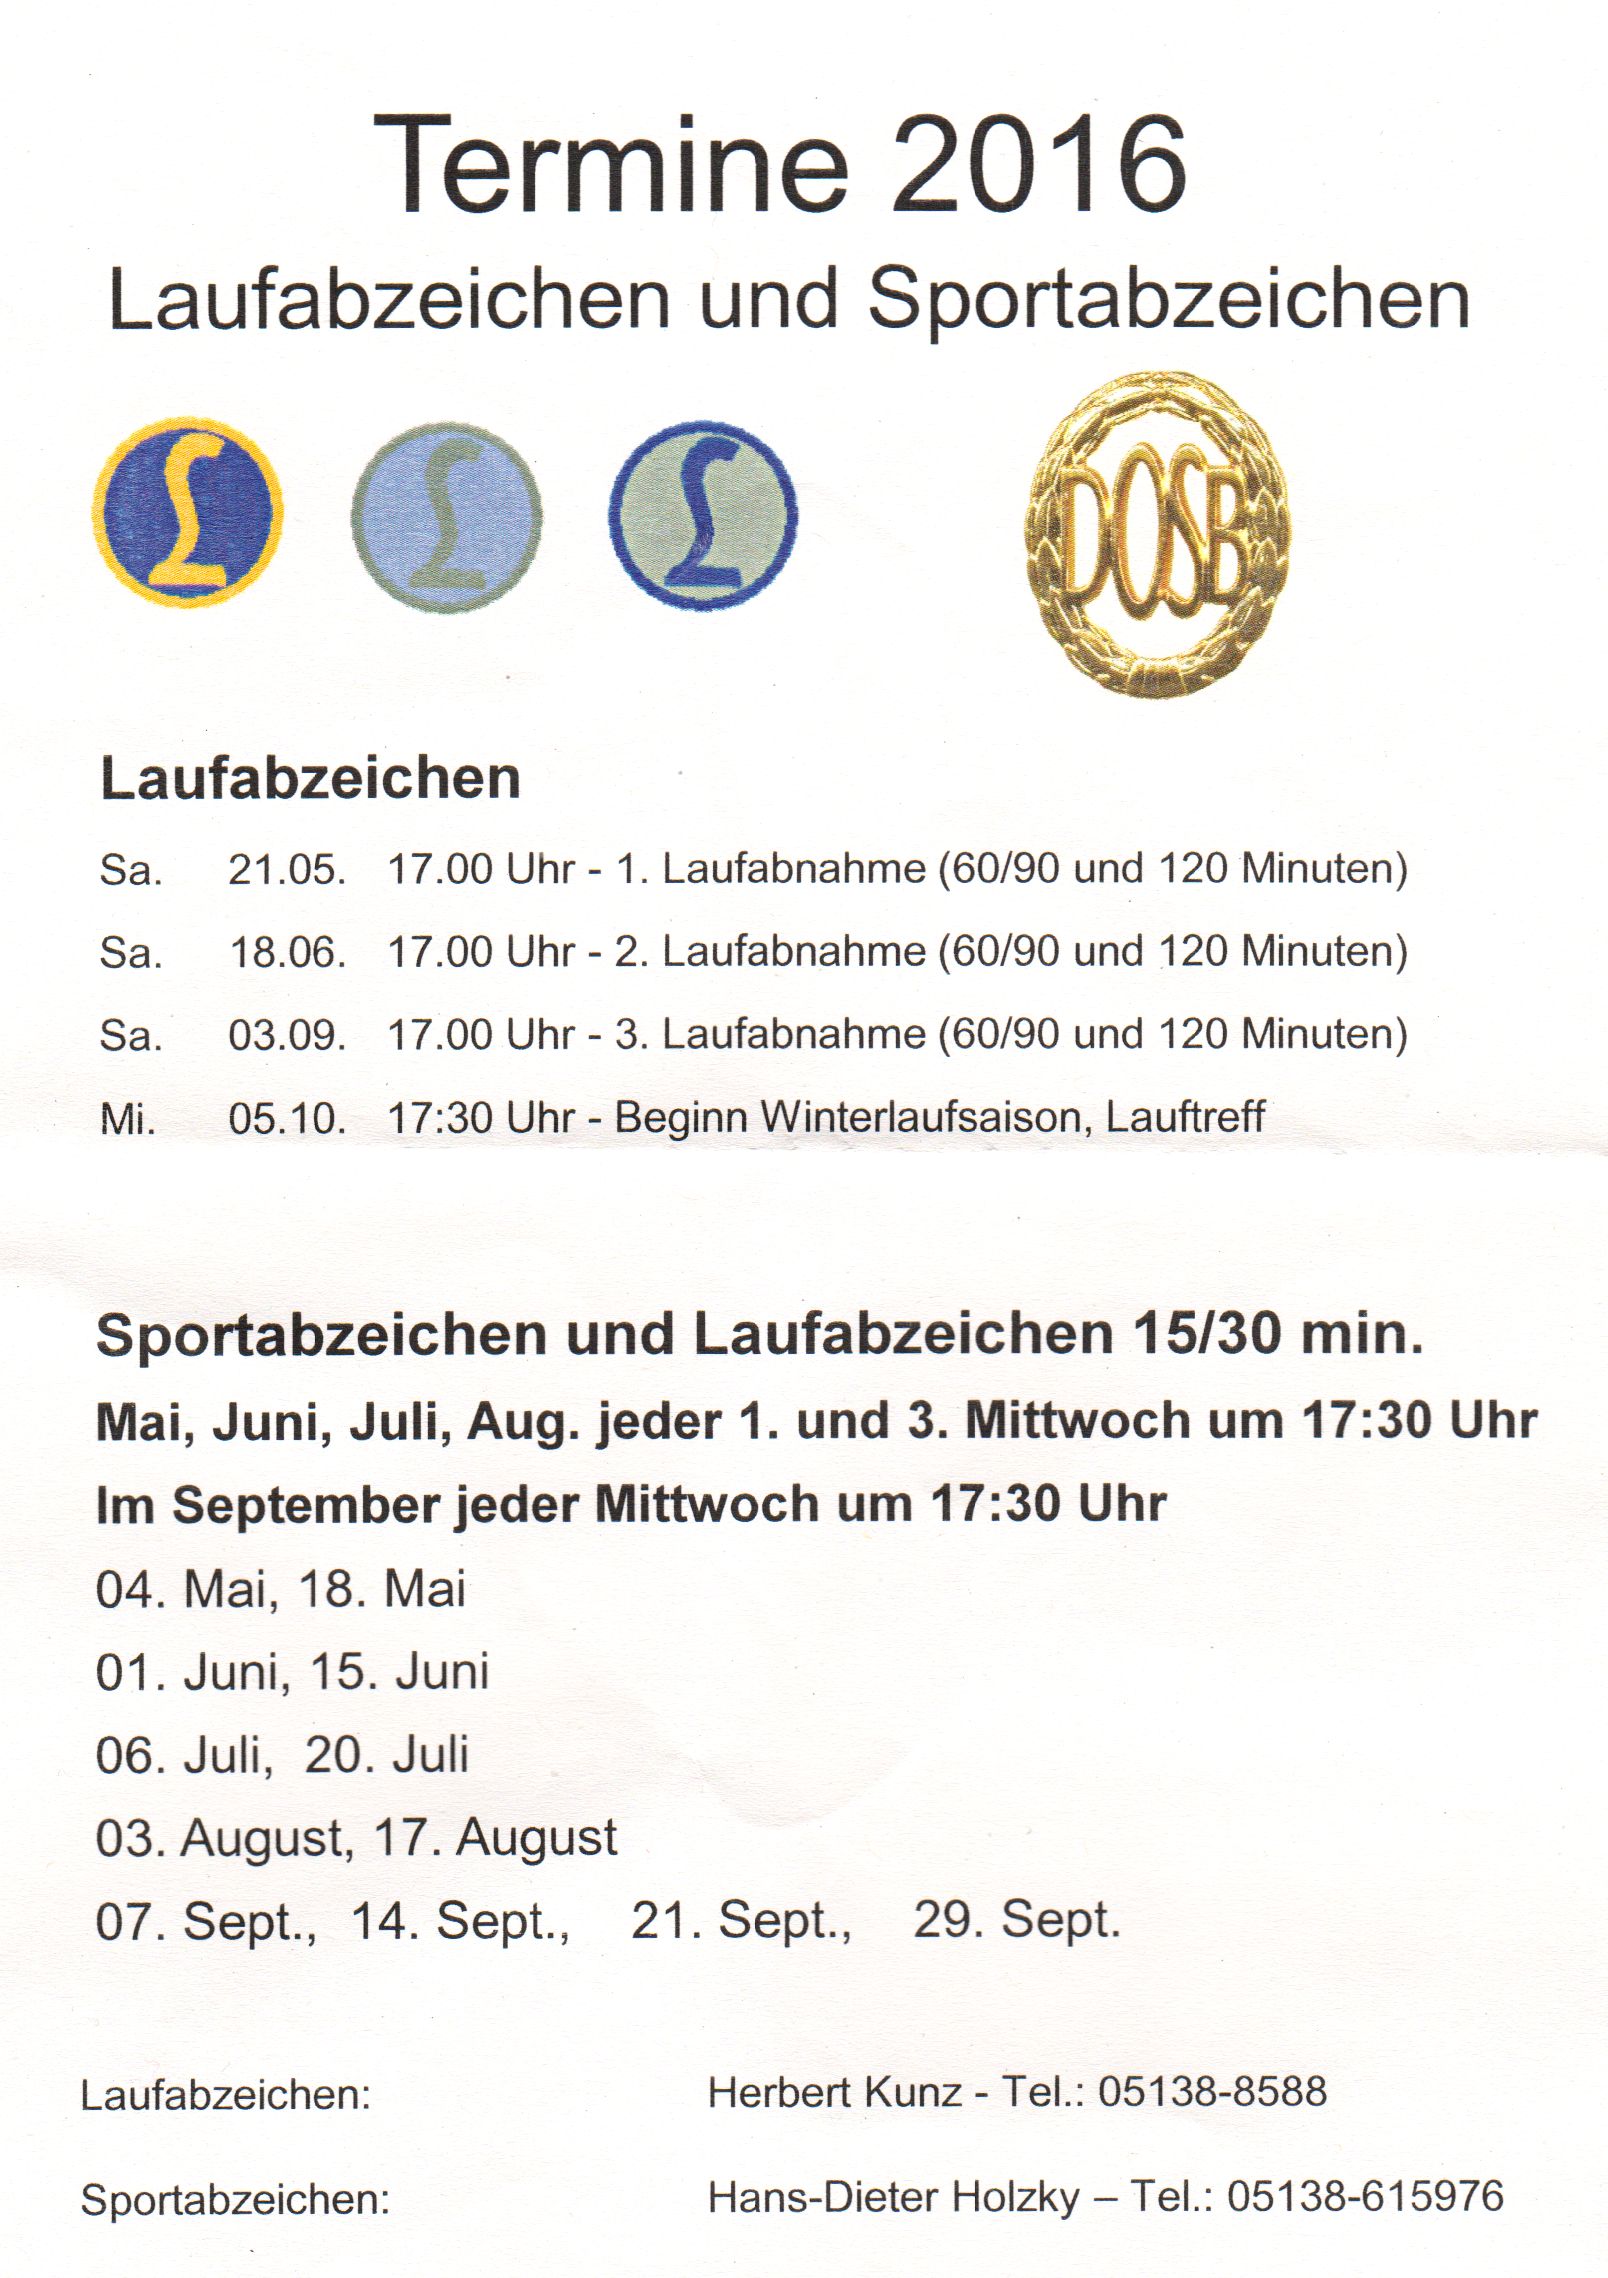 Laufabzeichen und Sportabzeichen - Termine 2016